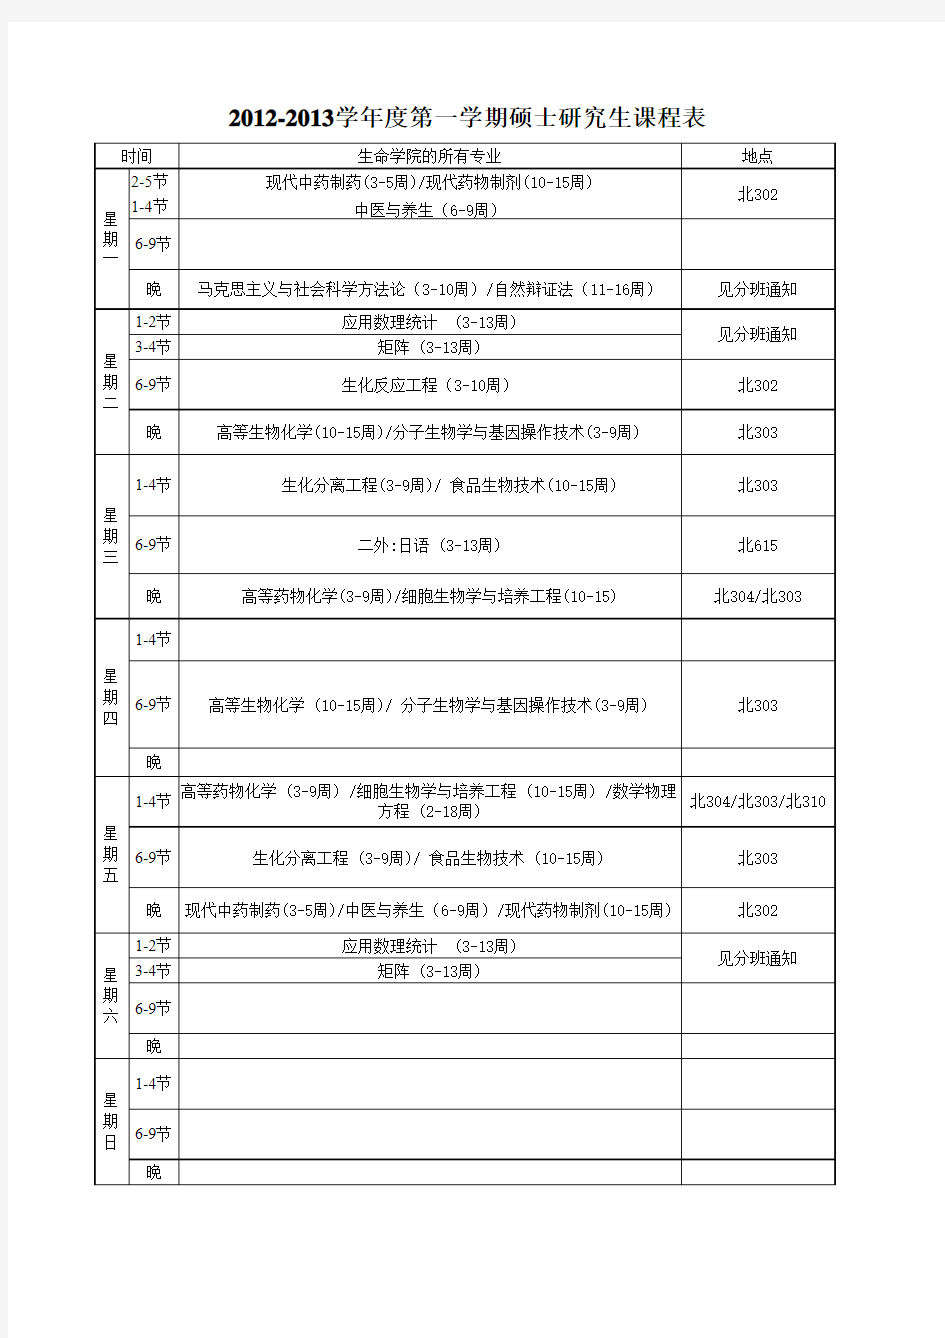 北京化工大学2012-2013 秋季研究生课程表(北区)